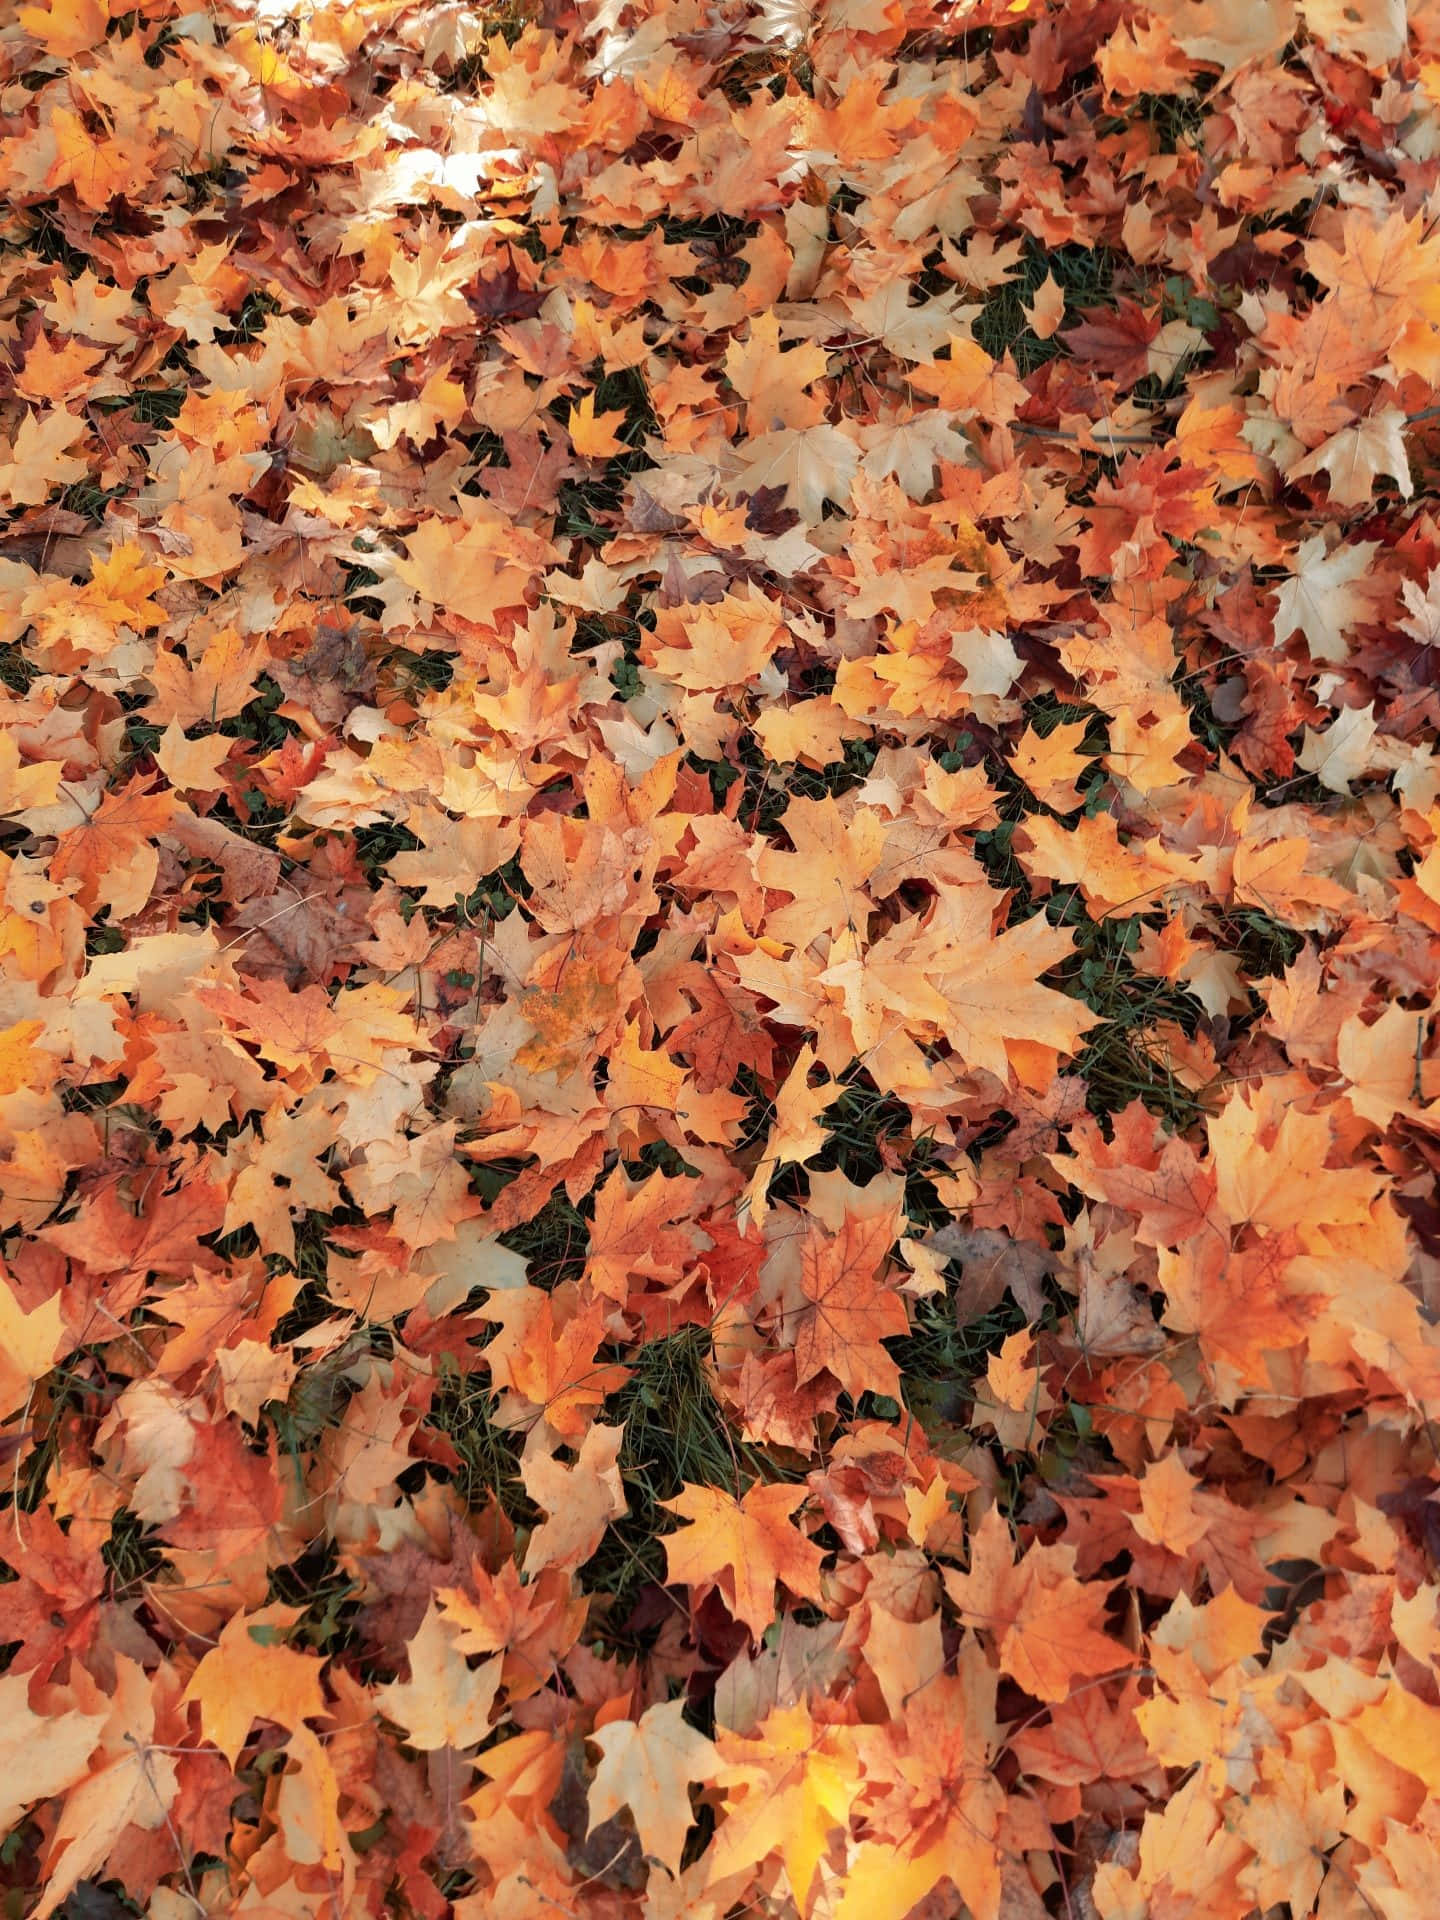 Preparatiper L'autunno Con Uno Sfondo Estetico Bellissimo!